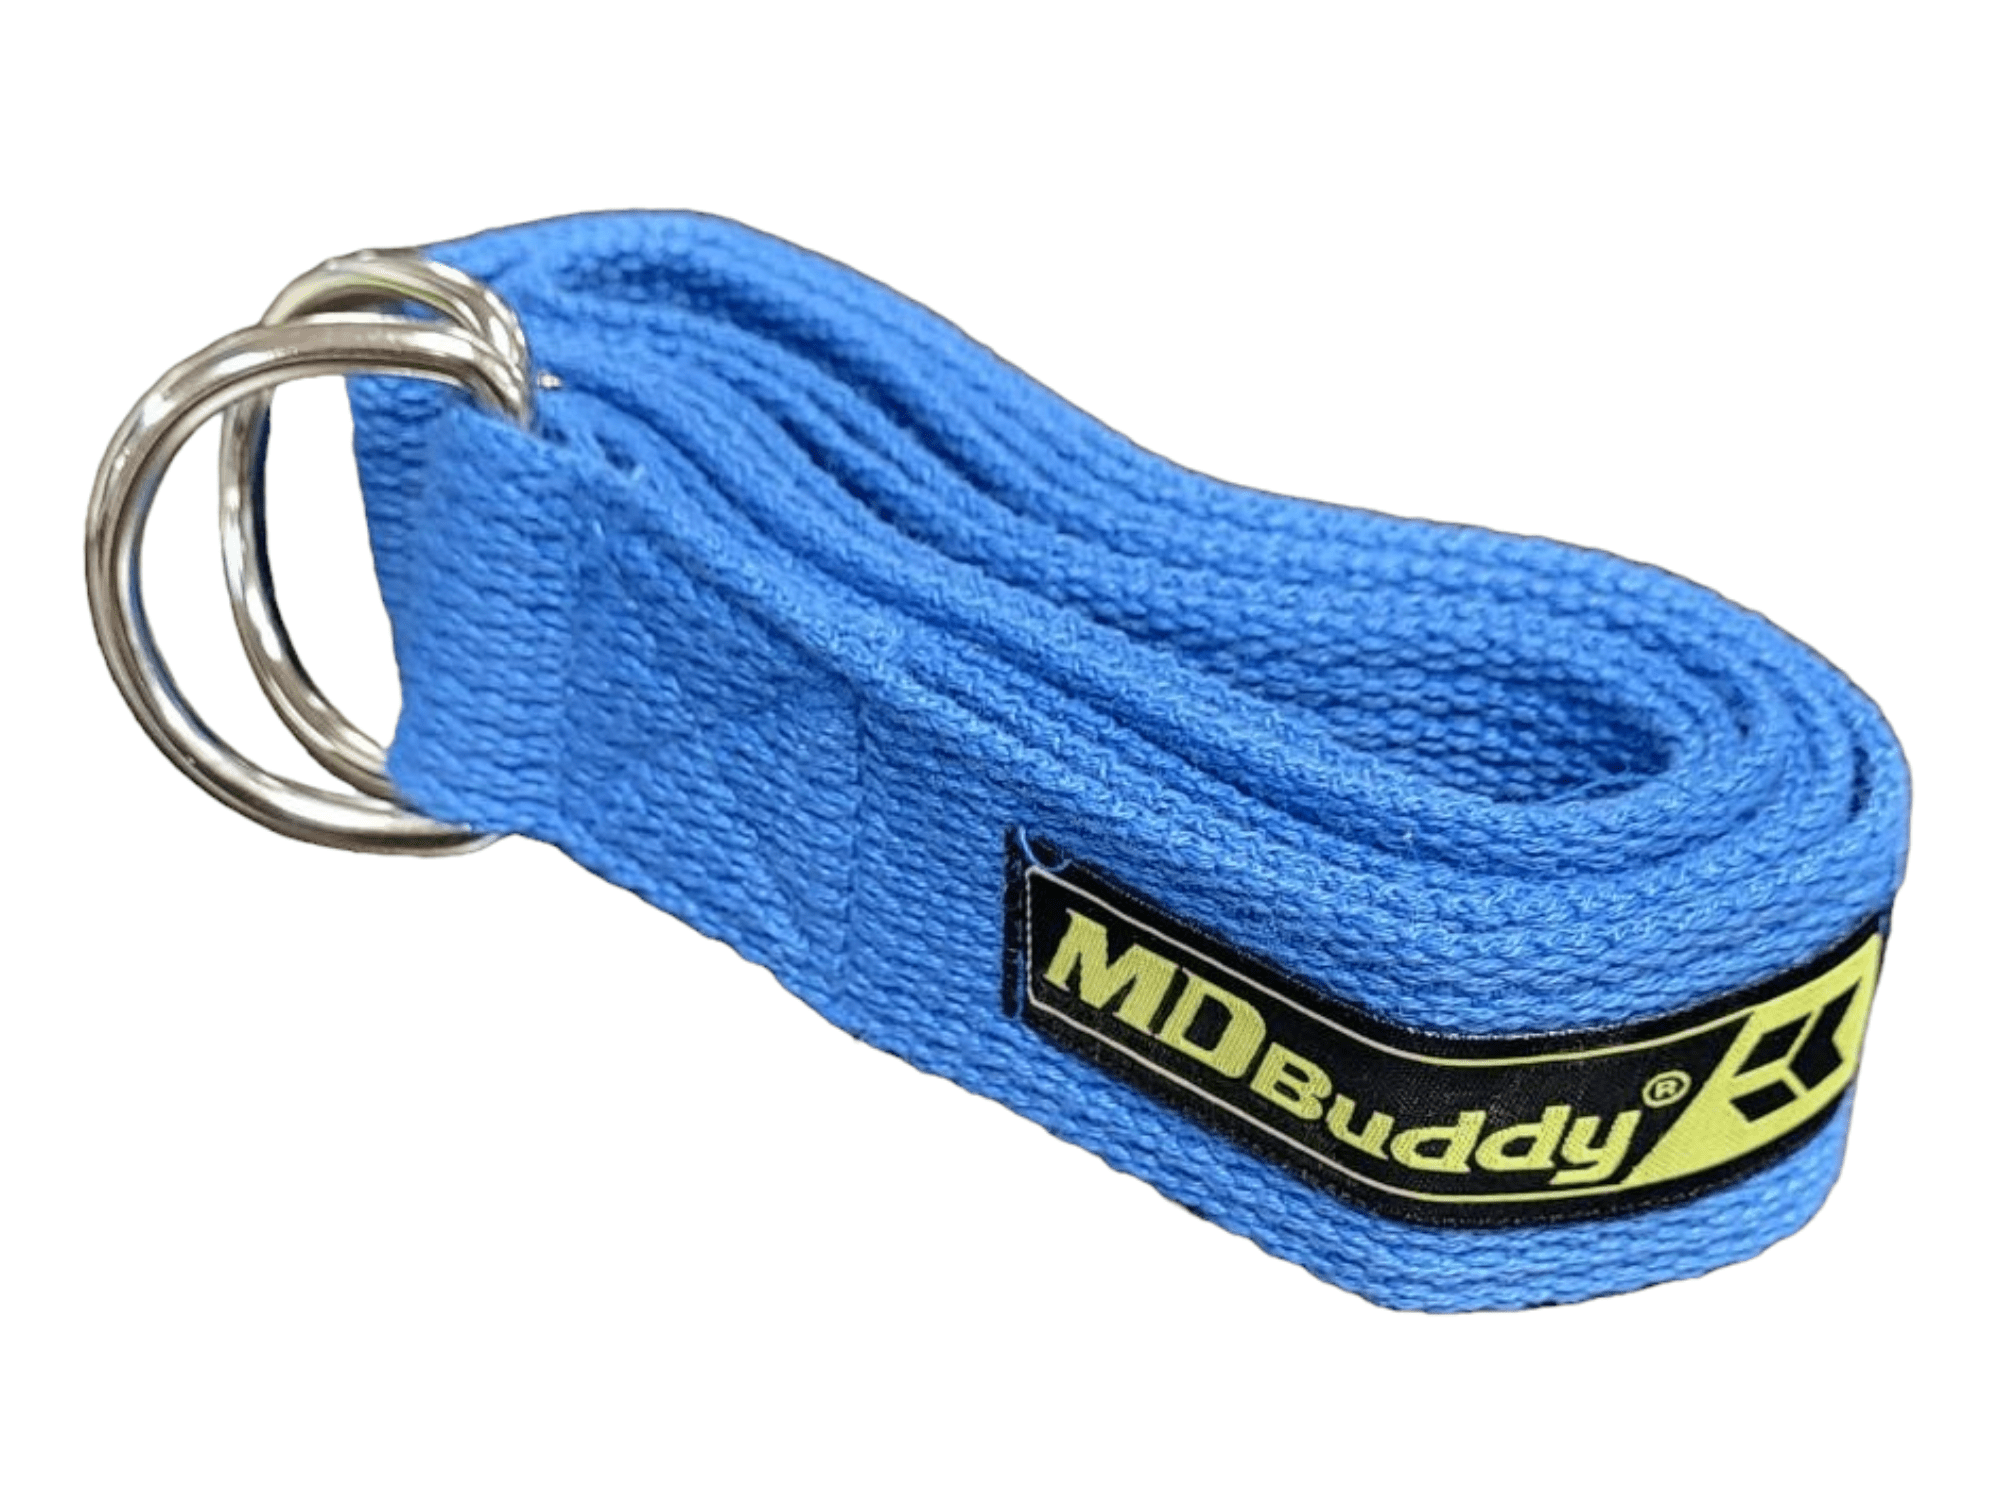 MD Buddy Yoga Strap-Yoga Strap-MD Buddy-1